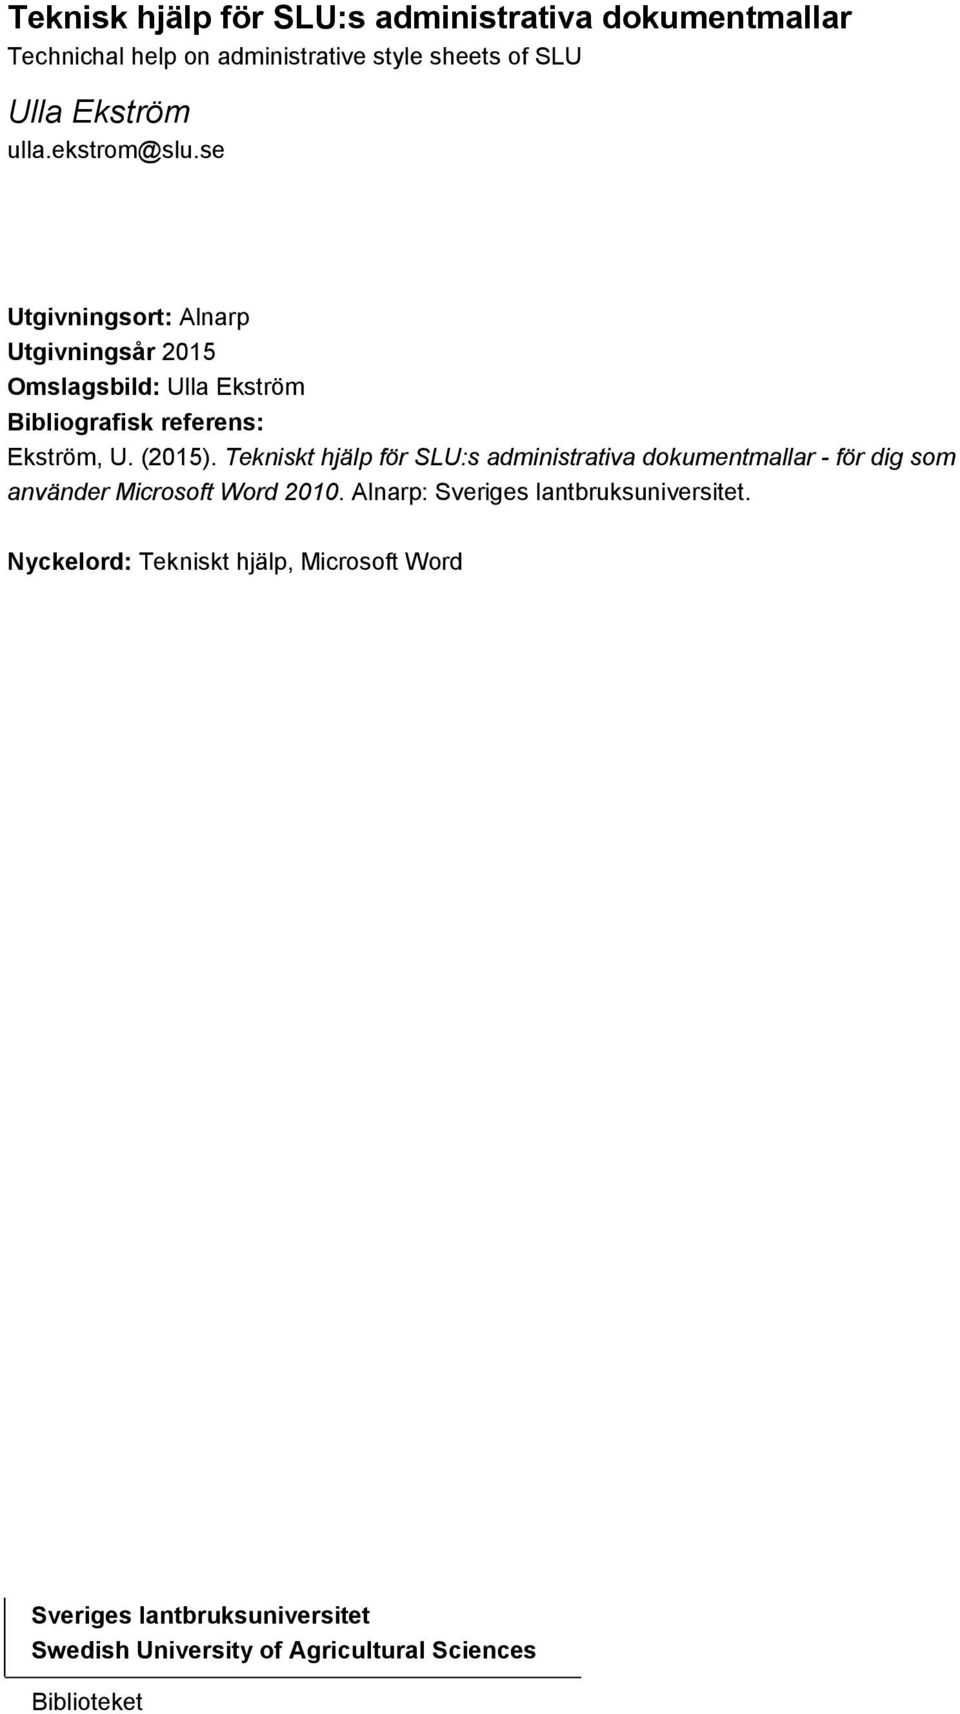 Tekniskt hjälp för SLU:s administrativa dokumentmallar - för dig som använder Microsoft Word 2010.